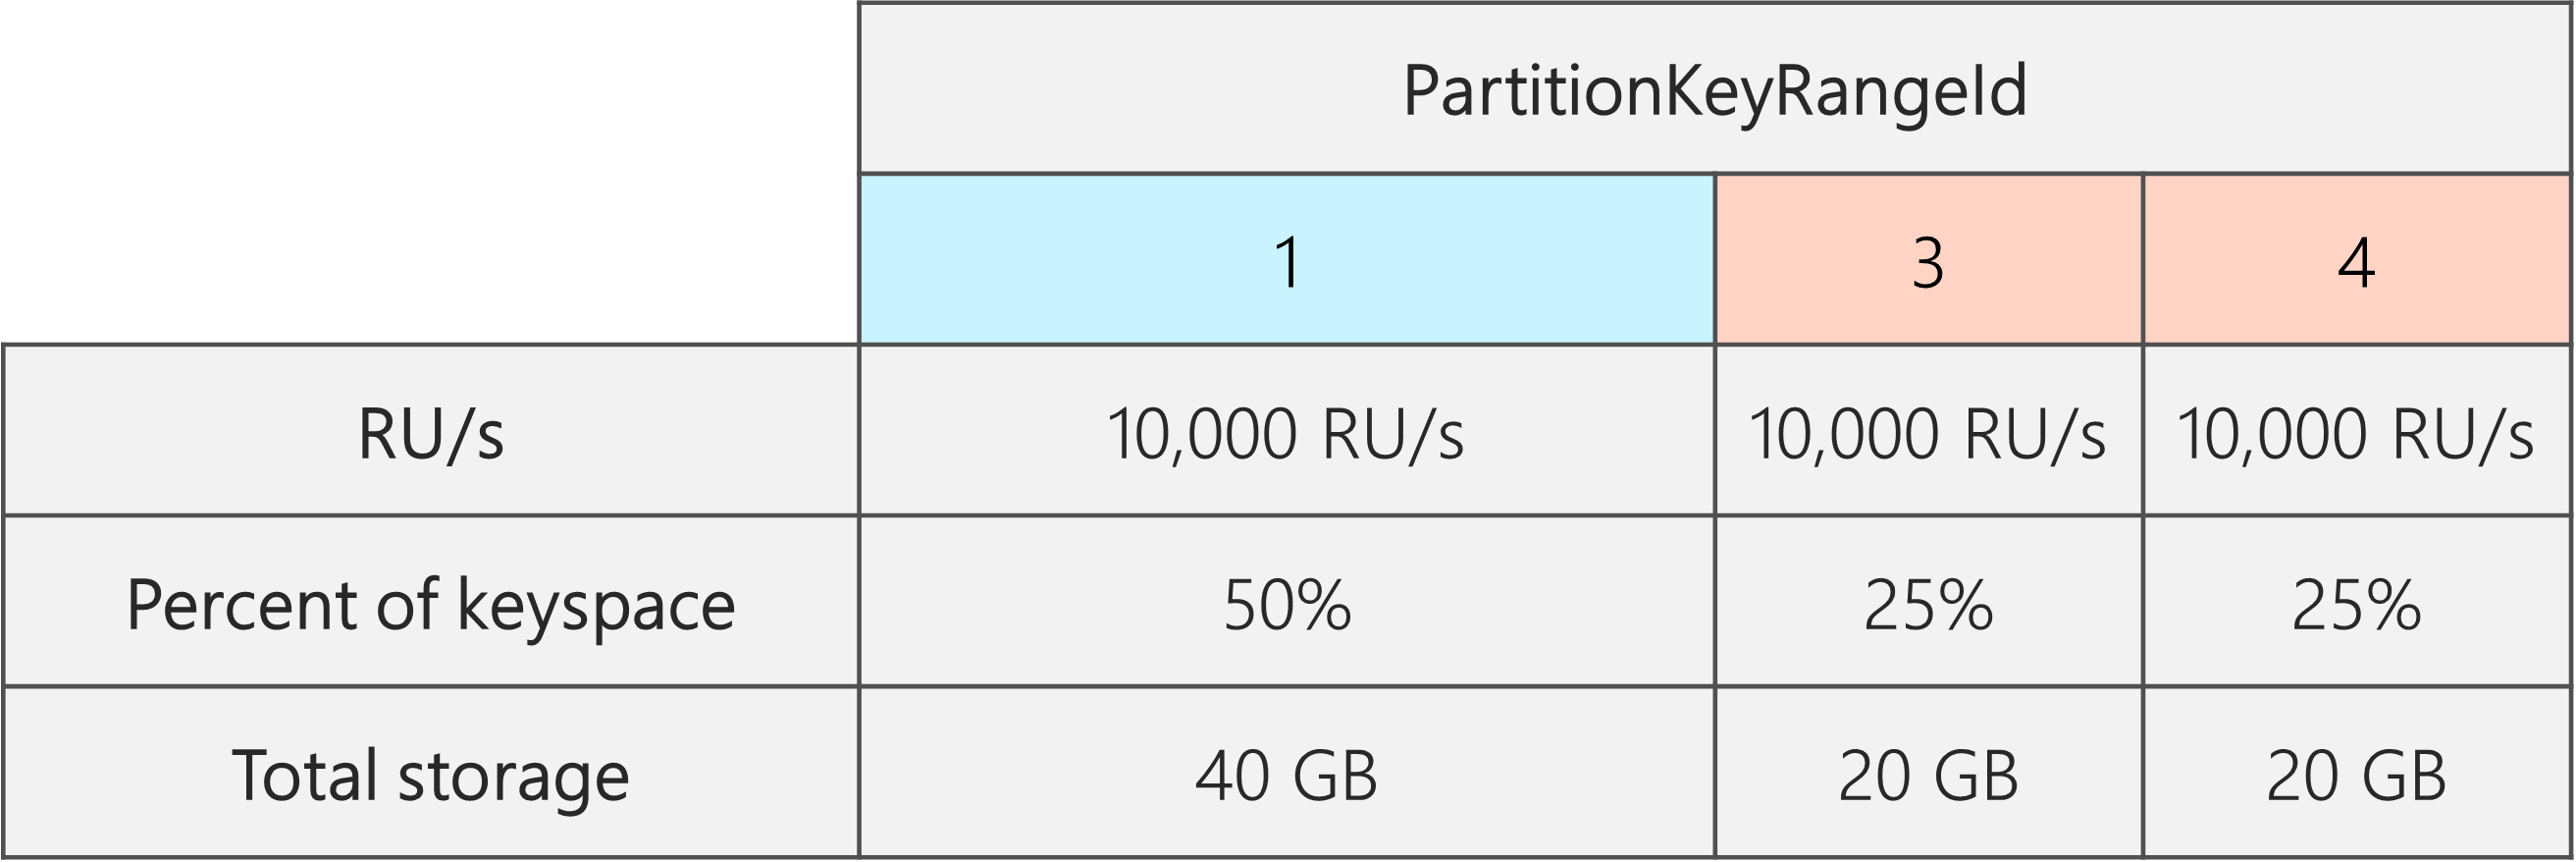 После разделения существует 3 идентификатора PartitionKeyRangeId, каждый из которых имеет 10 000 ЕЗ. Однако один из PartitionKeyRangeId имеет 50 % от общего пространства ключей (40 ГБ), а два PartitionKeyRangeId имеют 25 % от общего пространства ключей (20 ГБ)